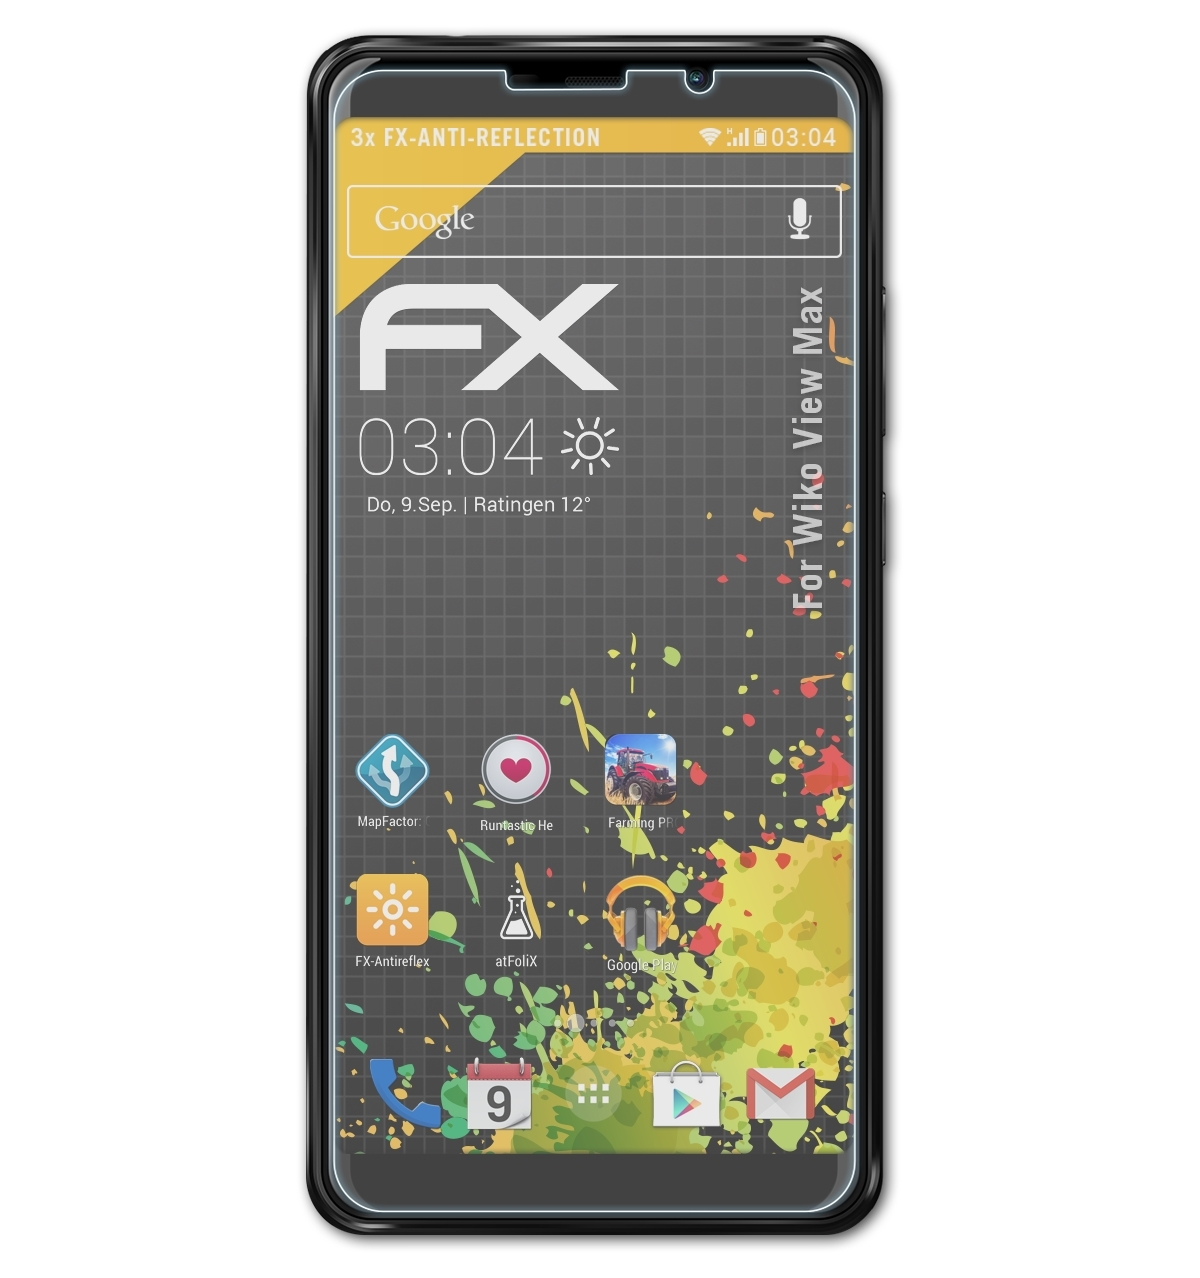 ATFOLIX 3x FX-Antireflex Displayschutz(für View Max) Wiko